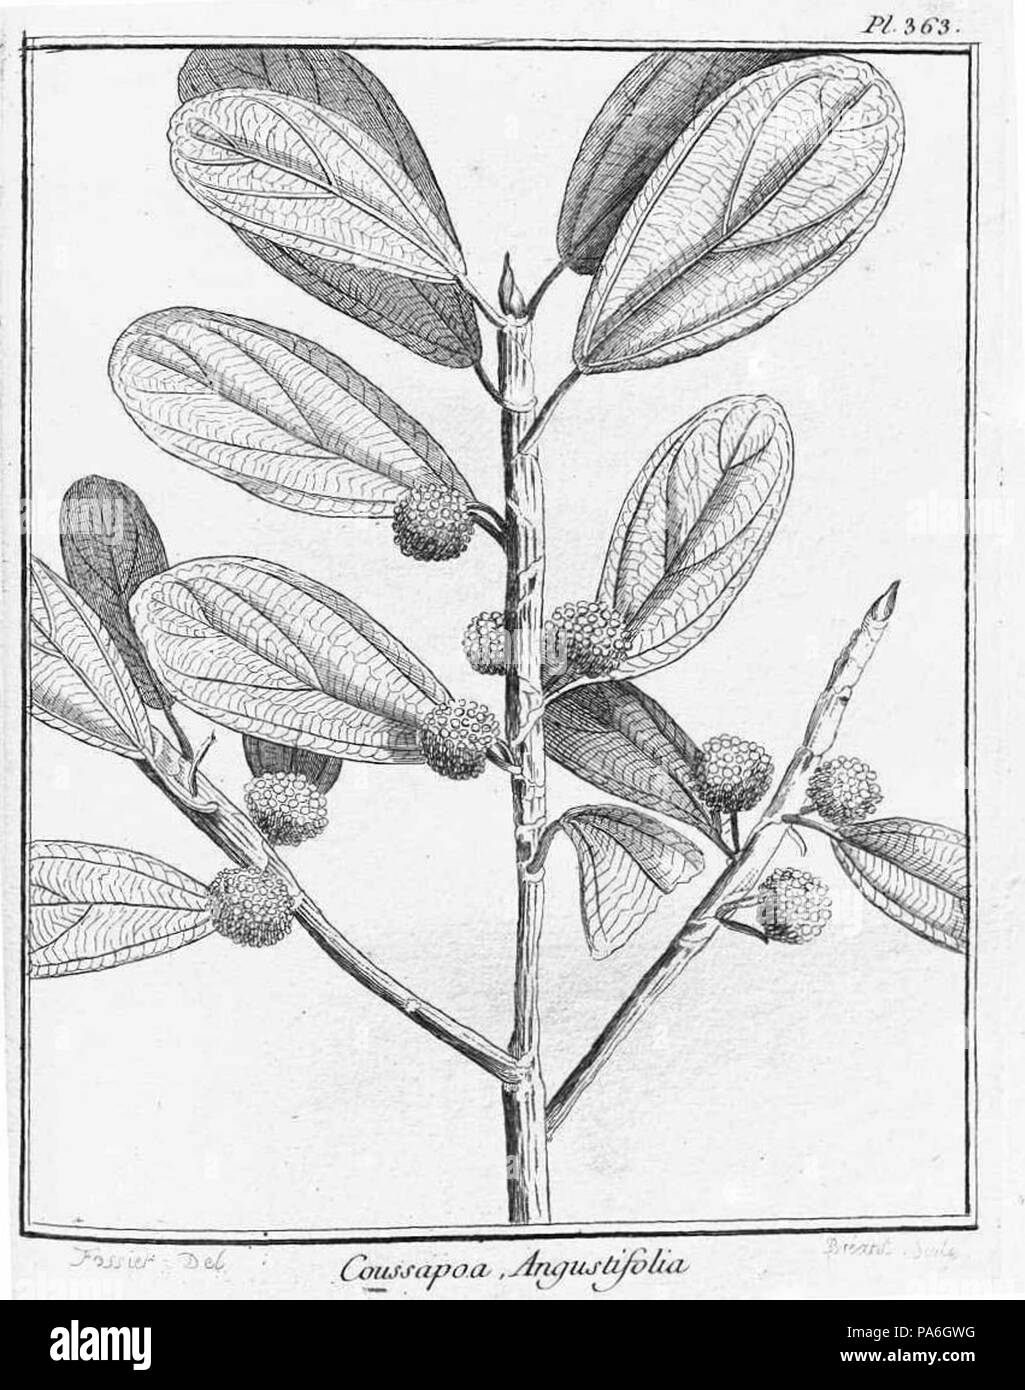 354 Coussapoa angustifolia-1 Stock Photo